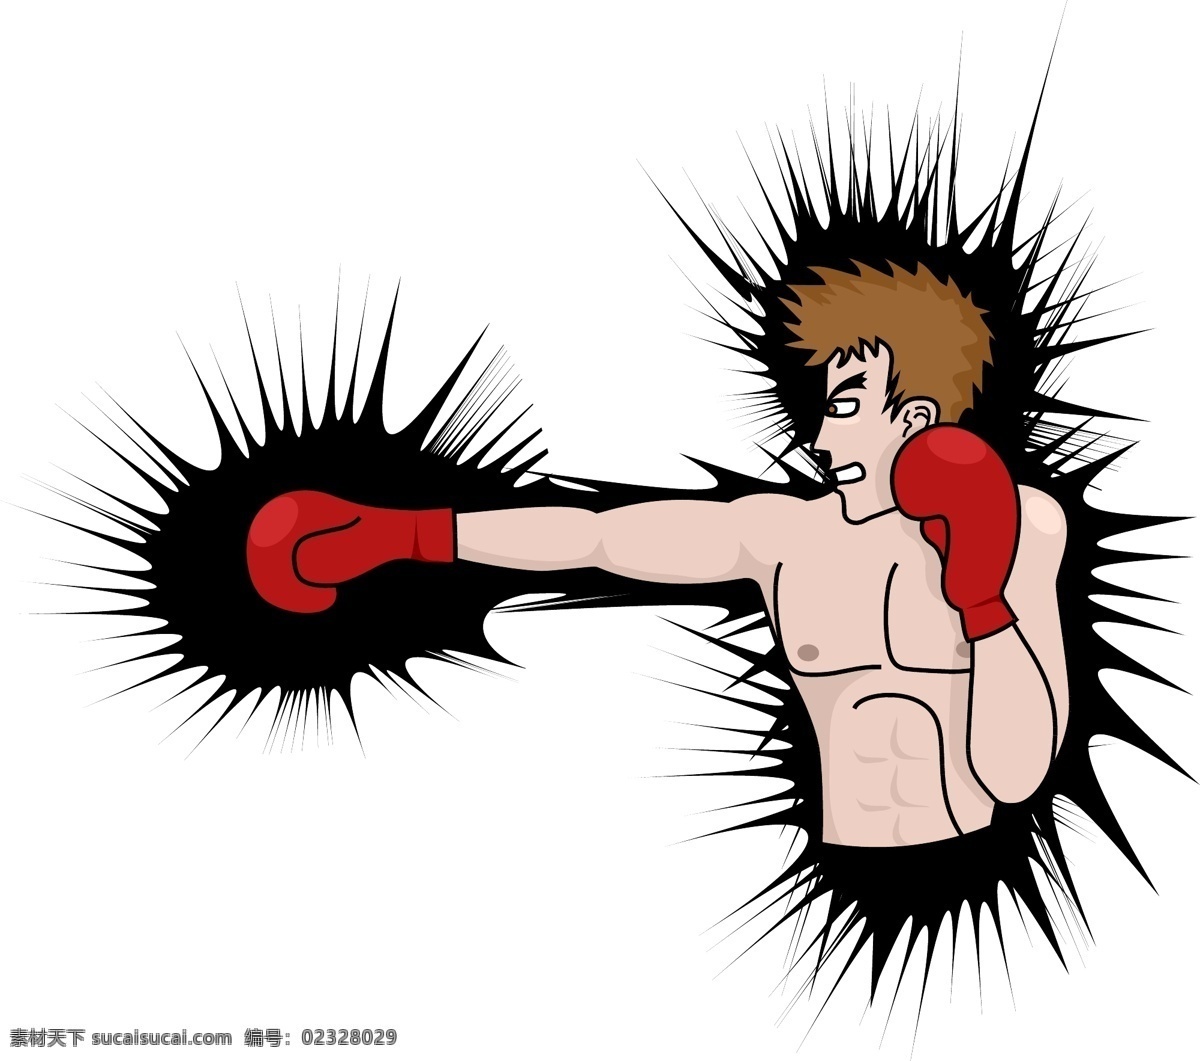 卡通动物 拳击 体育广告 体育运动 文化艺术 运动广告 拳击矢量素材 拳击模板下载 拳击运动员 搏击 强壮男人 矢量 矢量图 日常生活